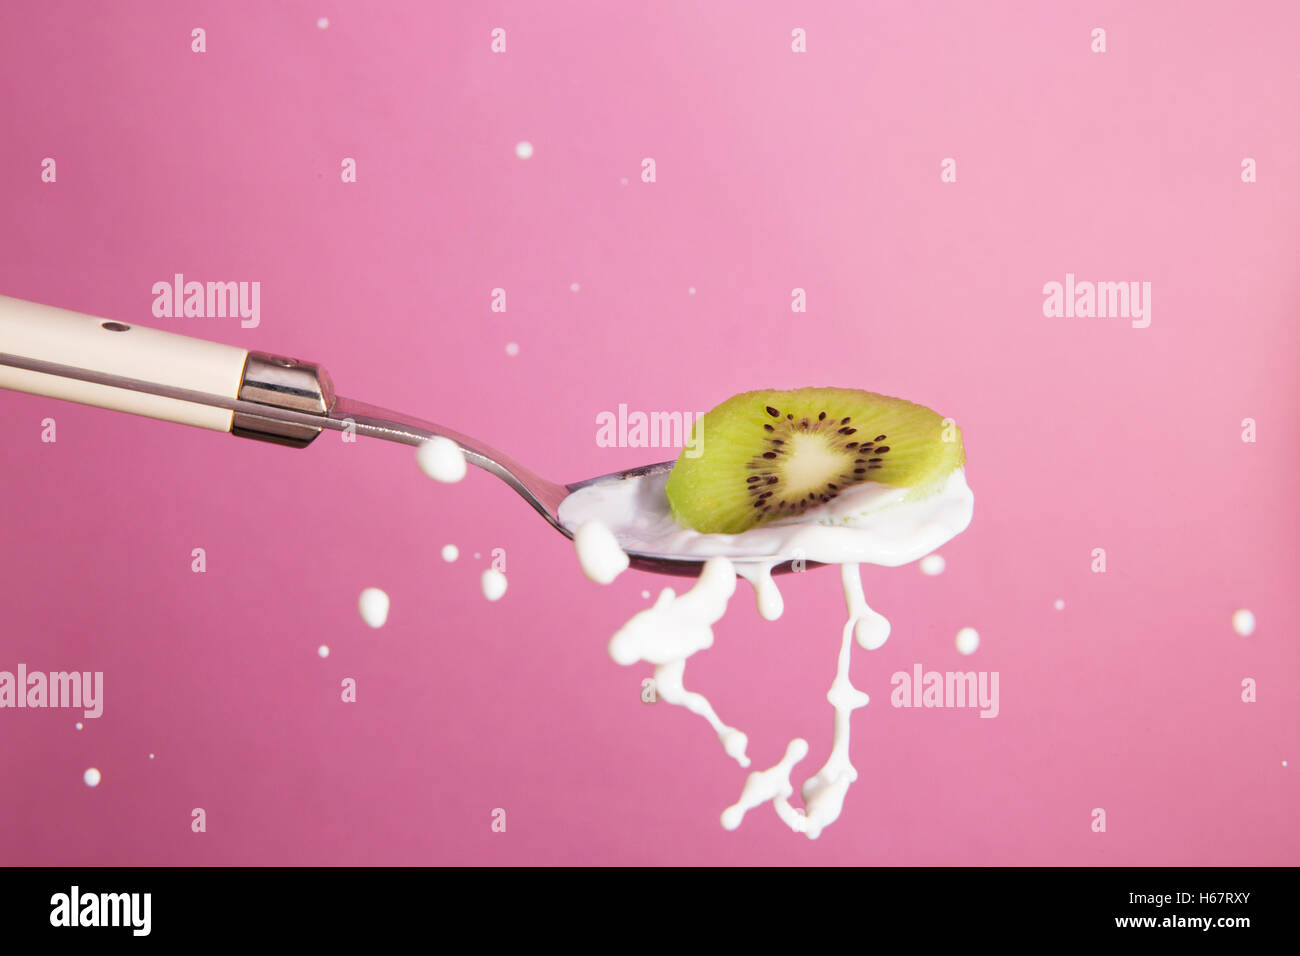 Splash ritratto del cucchiaio con kiwi e latte Foto Stock